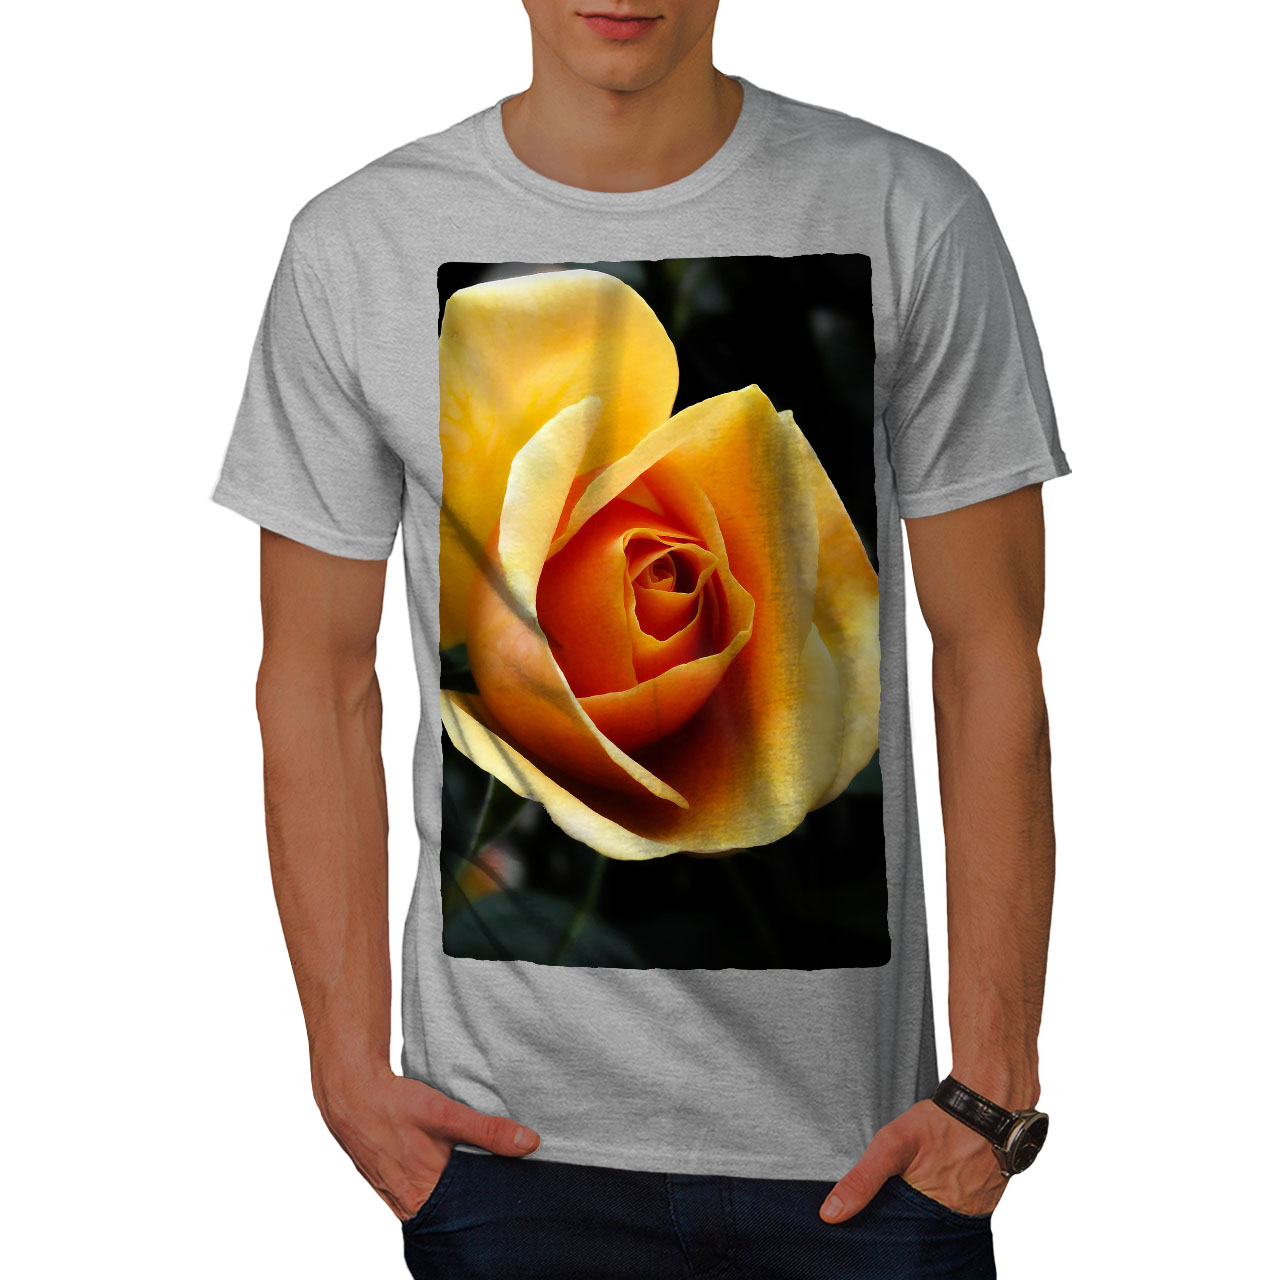 Wellcoda Yellow Rose Photo Mens T-shirt Flower Graphic Design Printed Tee